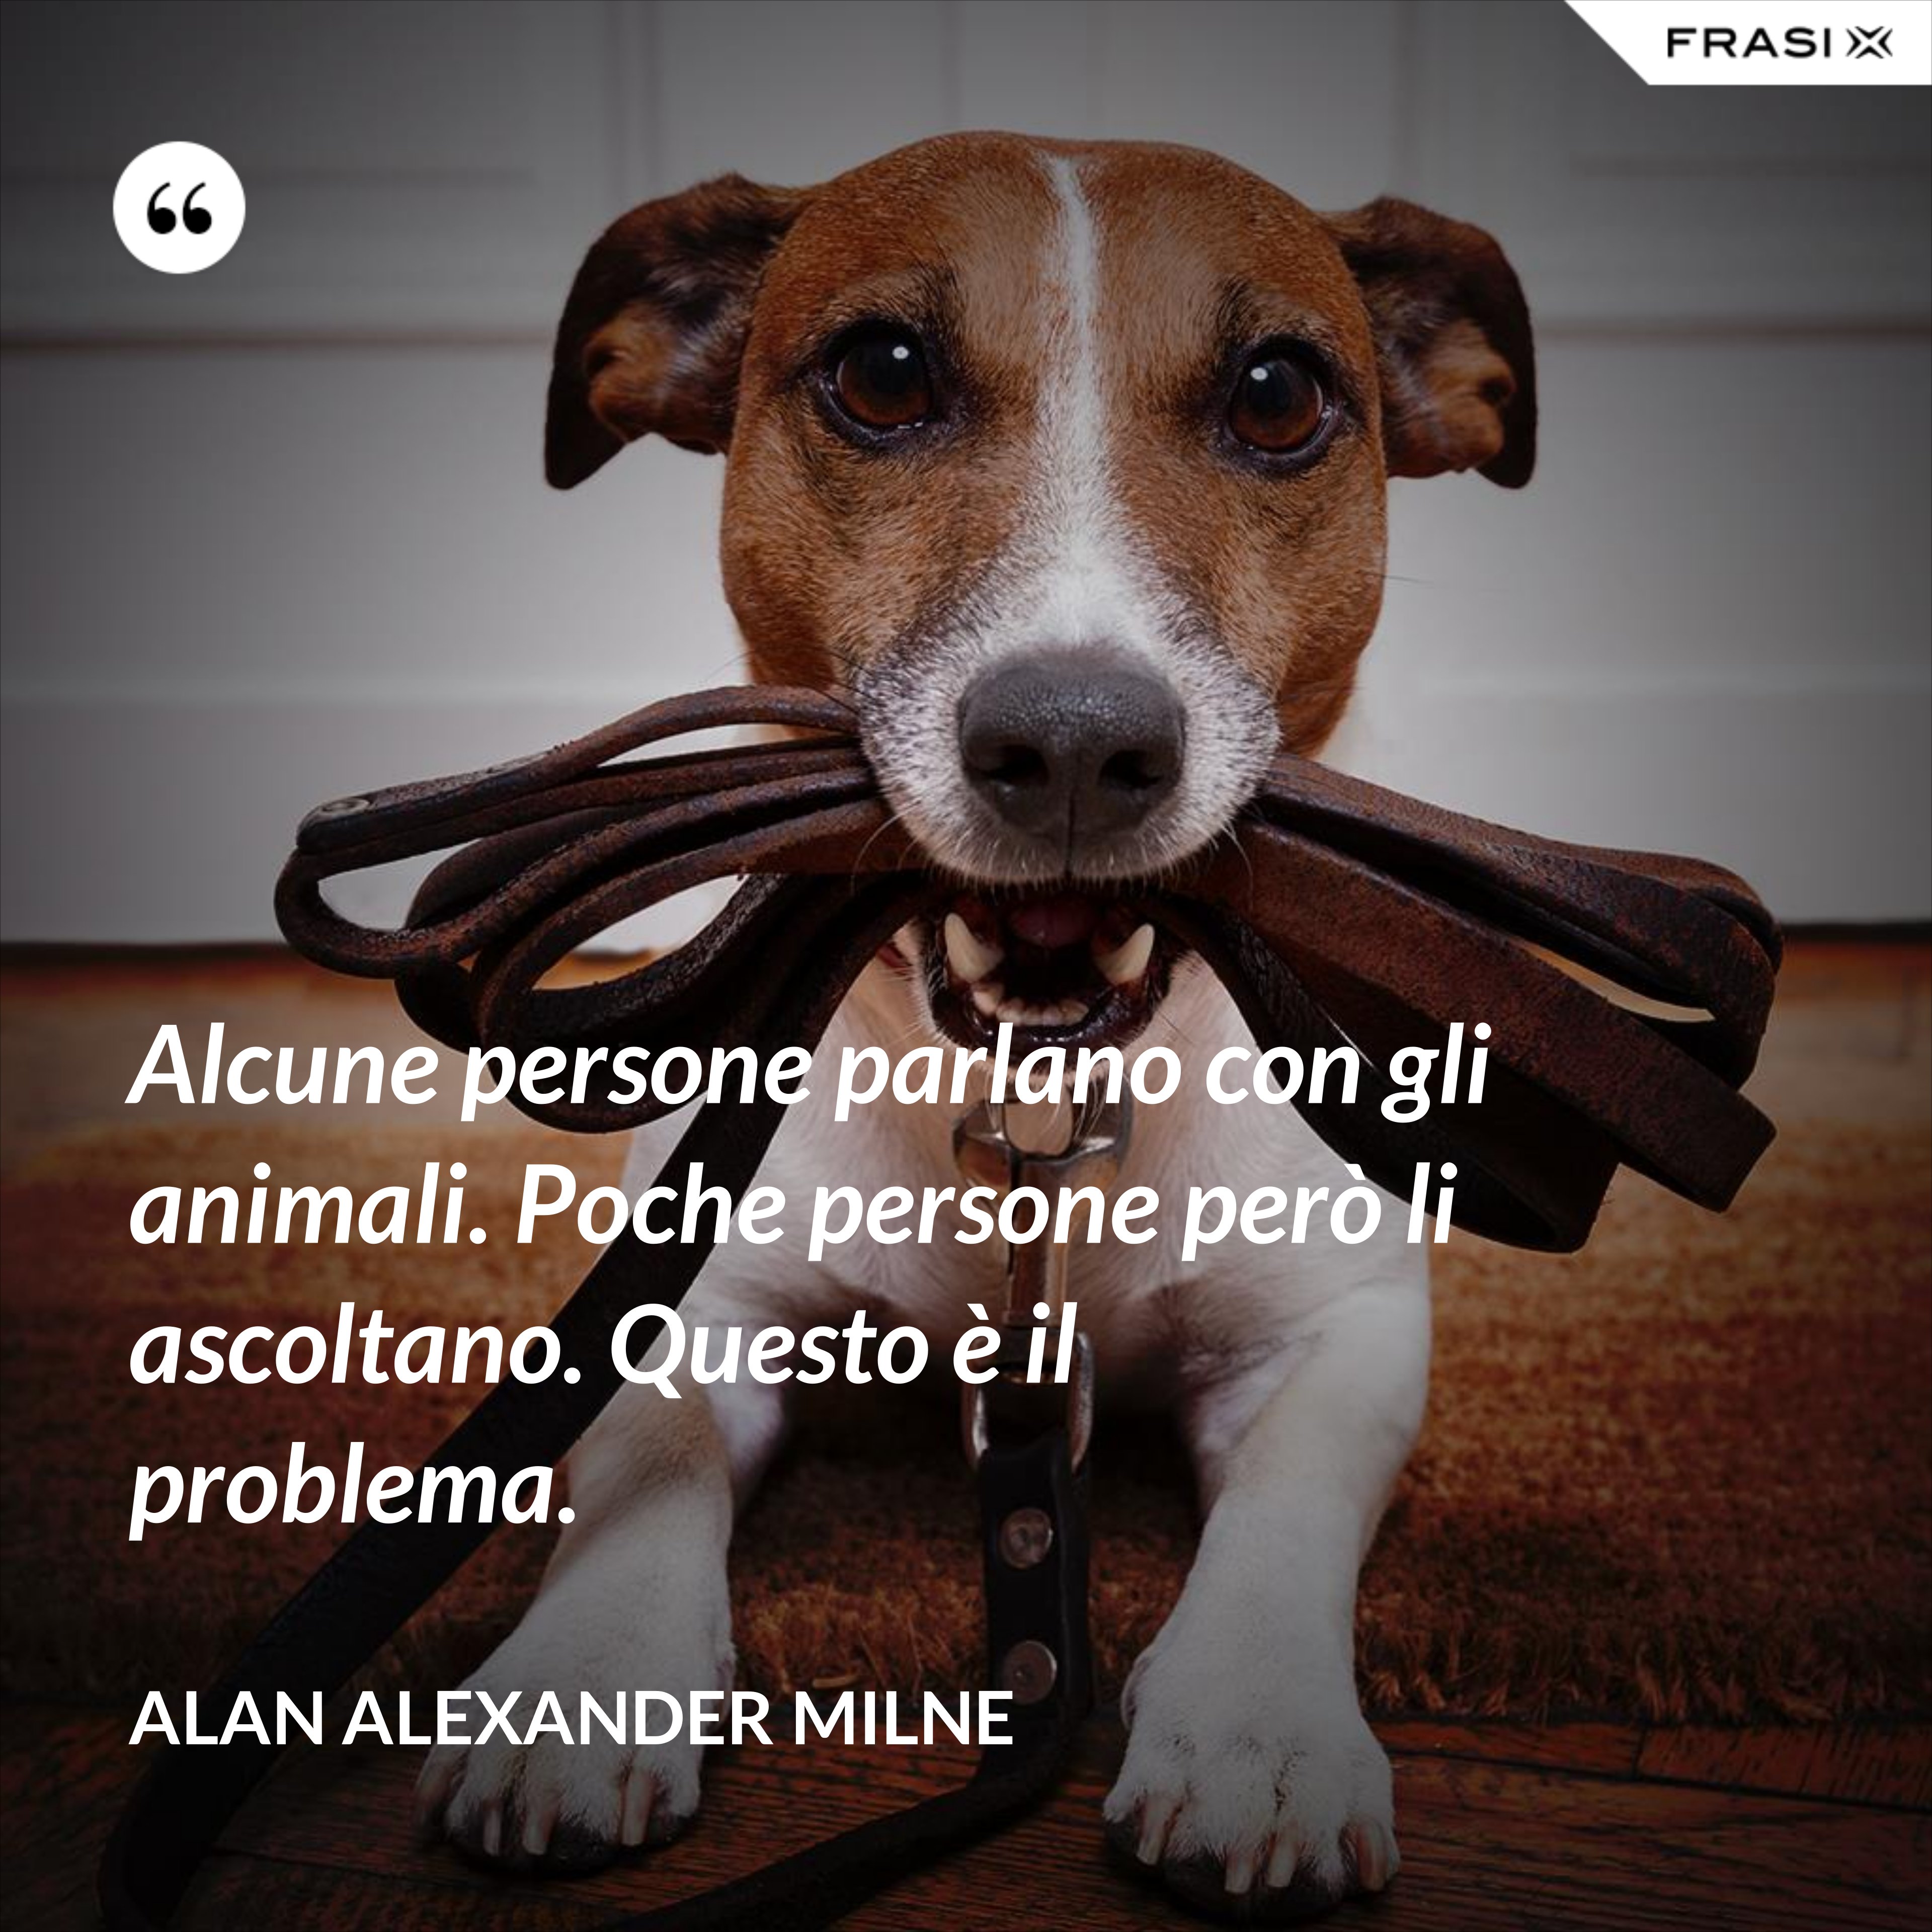 Alcune persone parlano con gli animali. Poche persone però li ascoltano. Questo è il problema. - Alan Alexander Milne